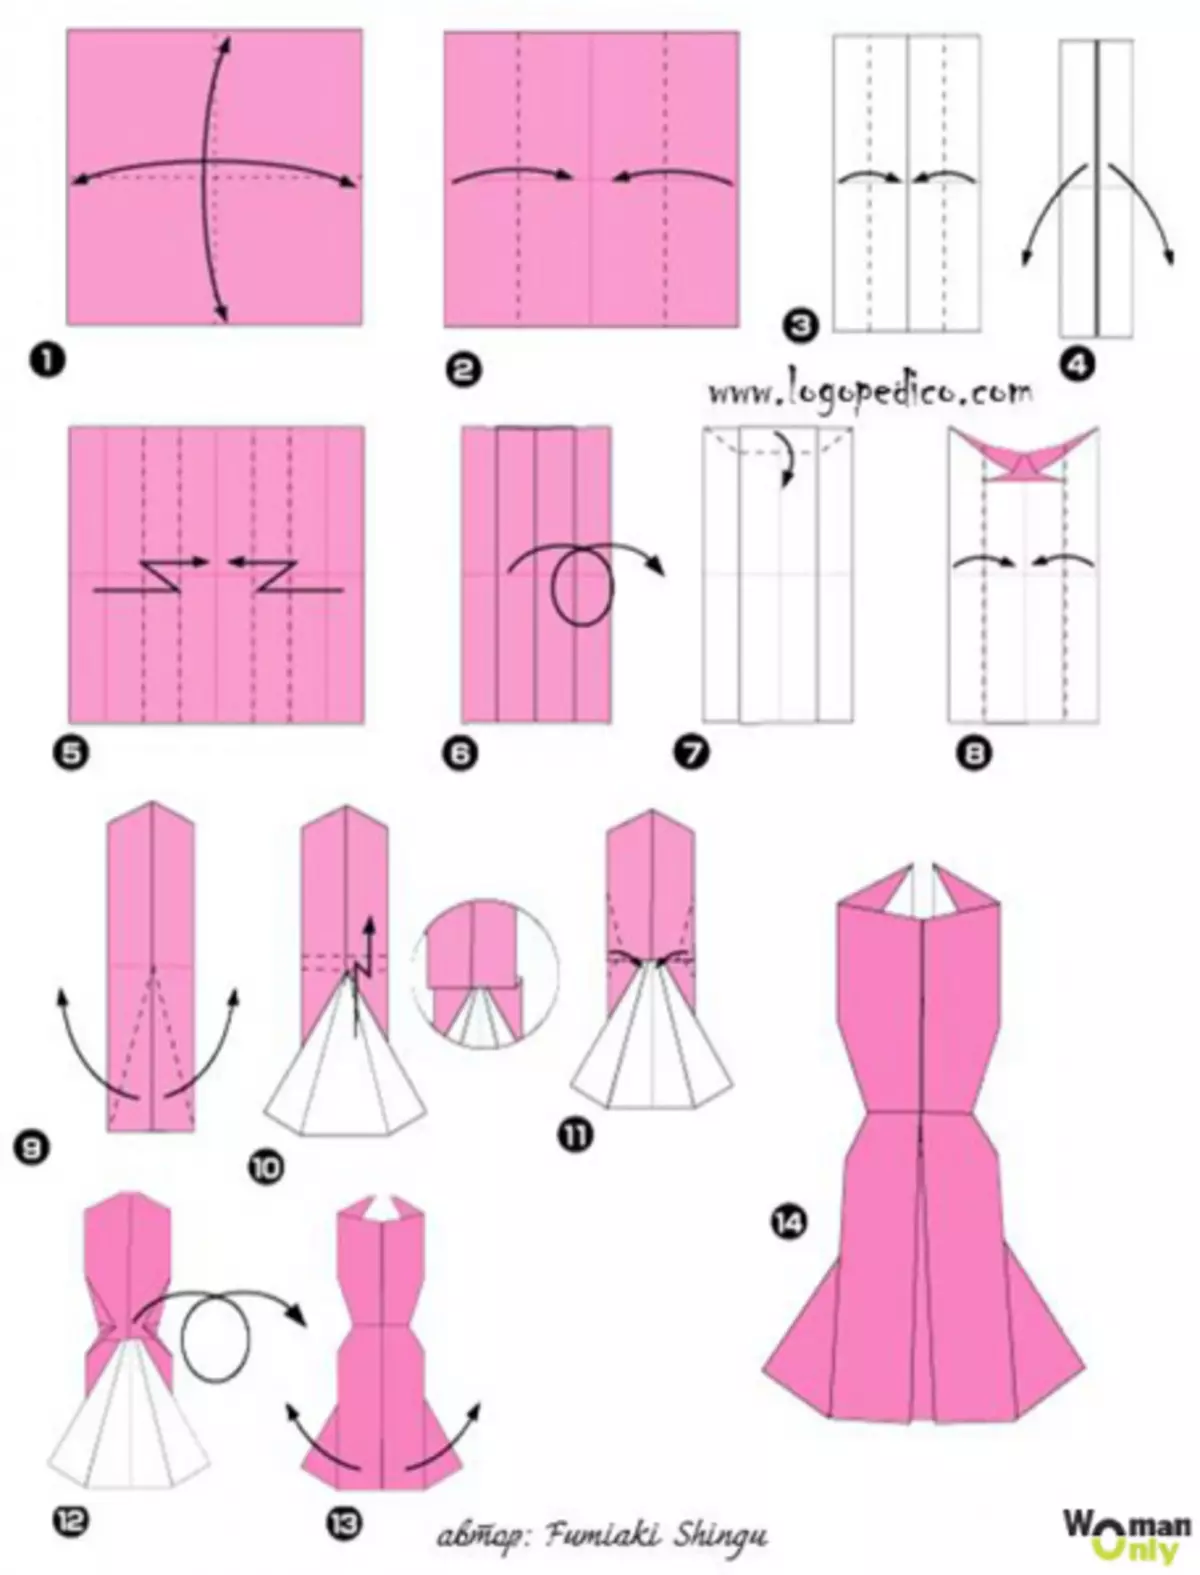 Origami-Vestidos de papel con esquemas el 8 de marzo con video y fotos.